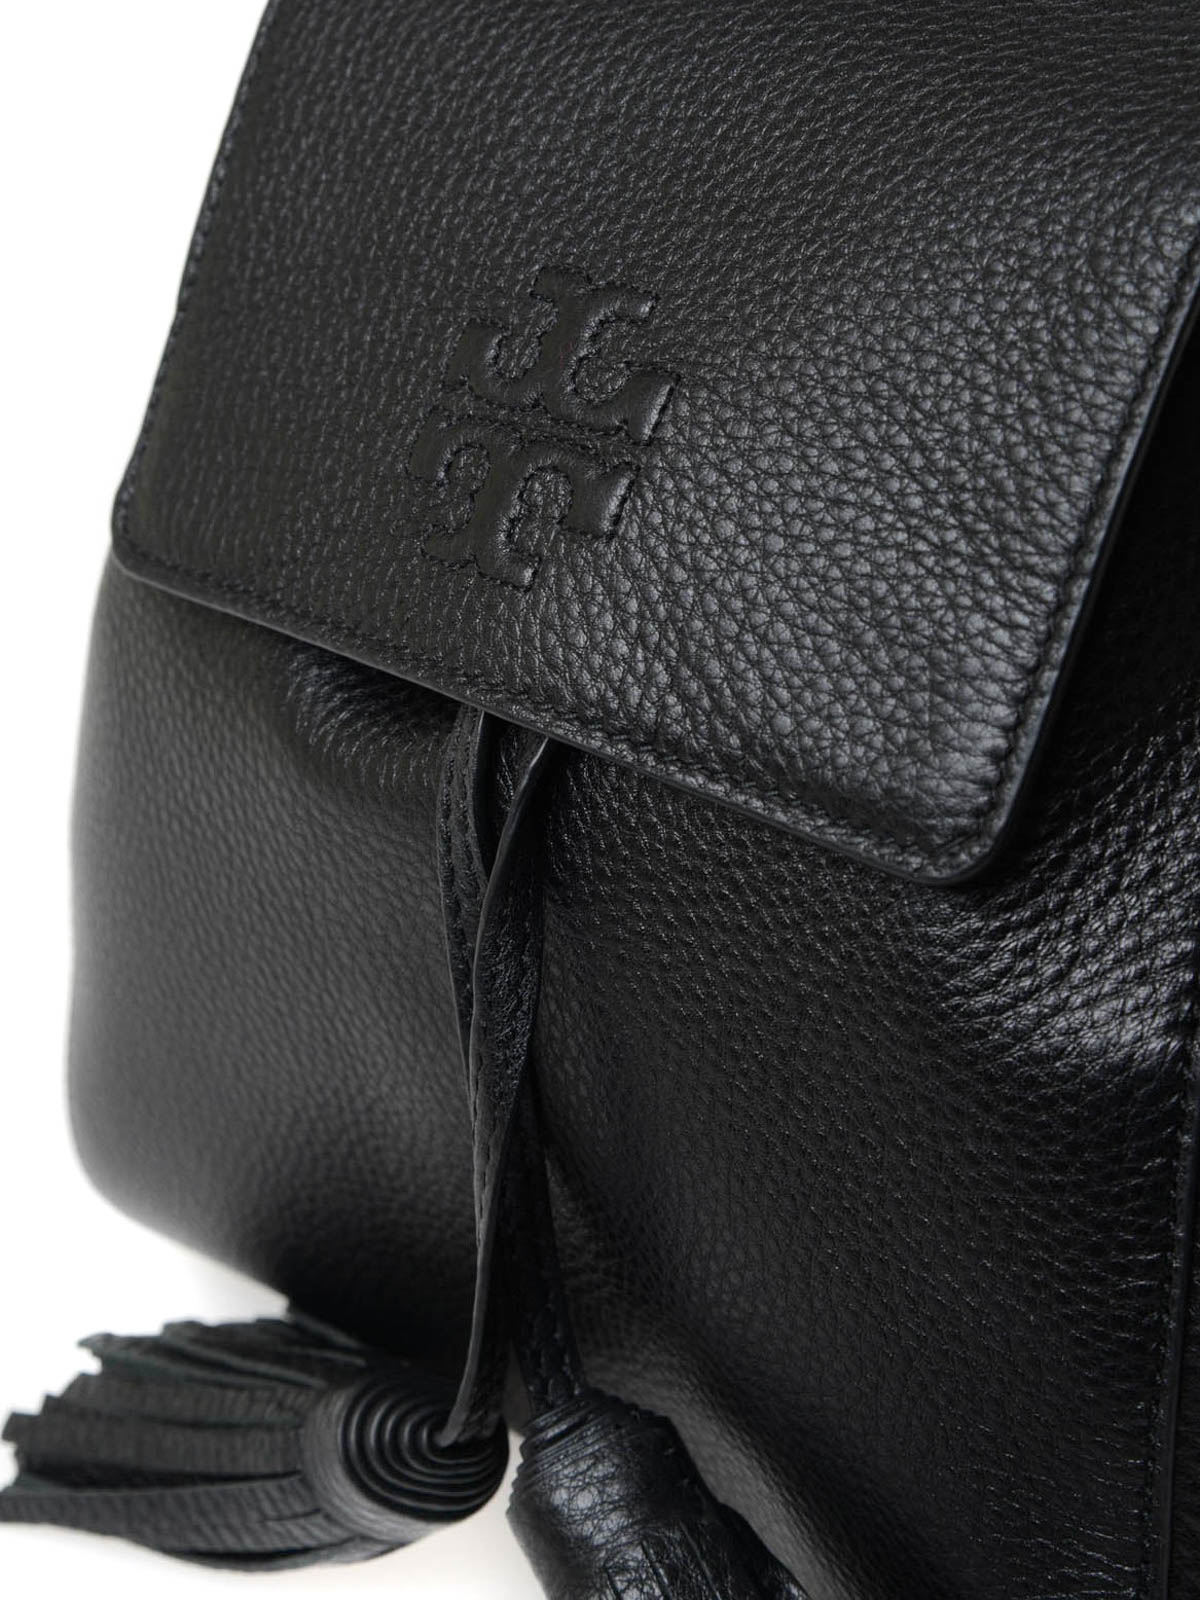 Tory burch thea mini backpack tassels pebbled leather black